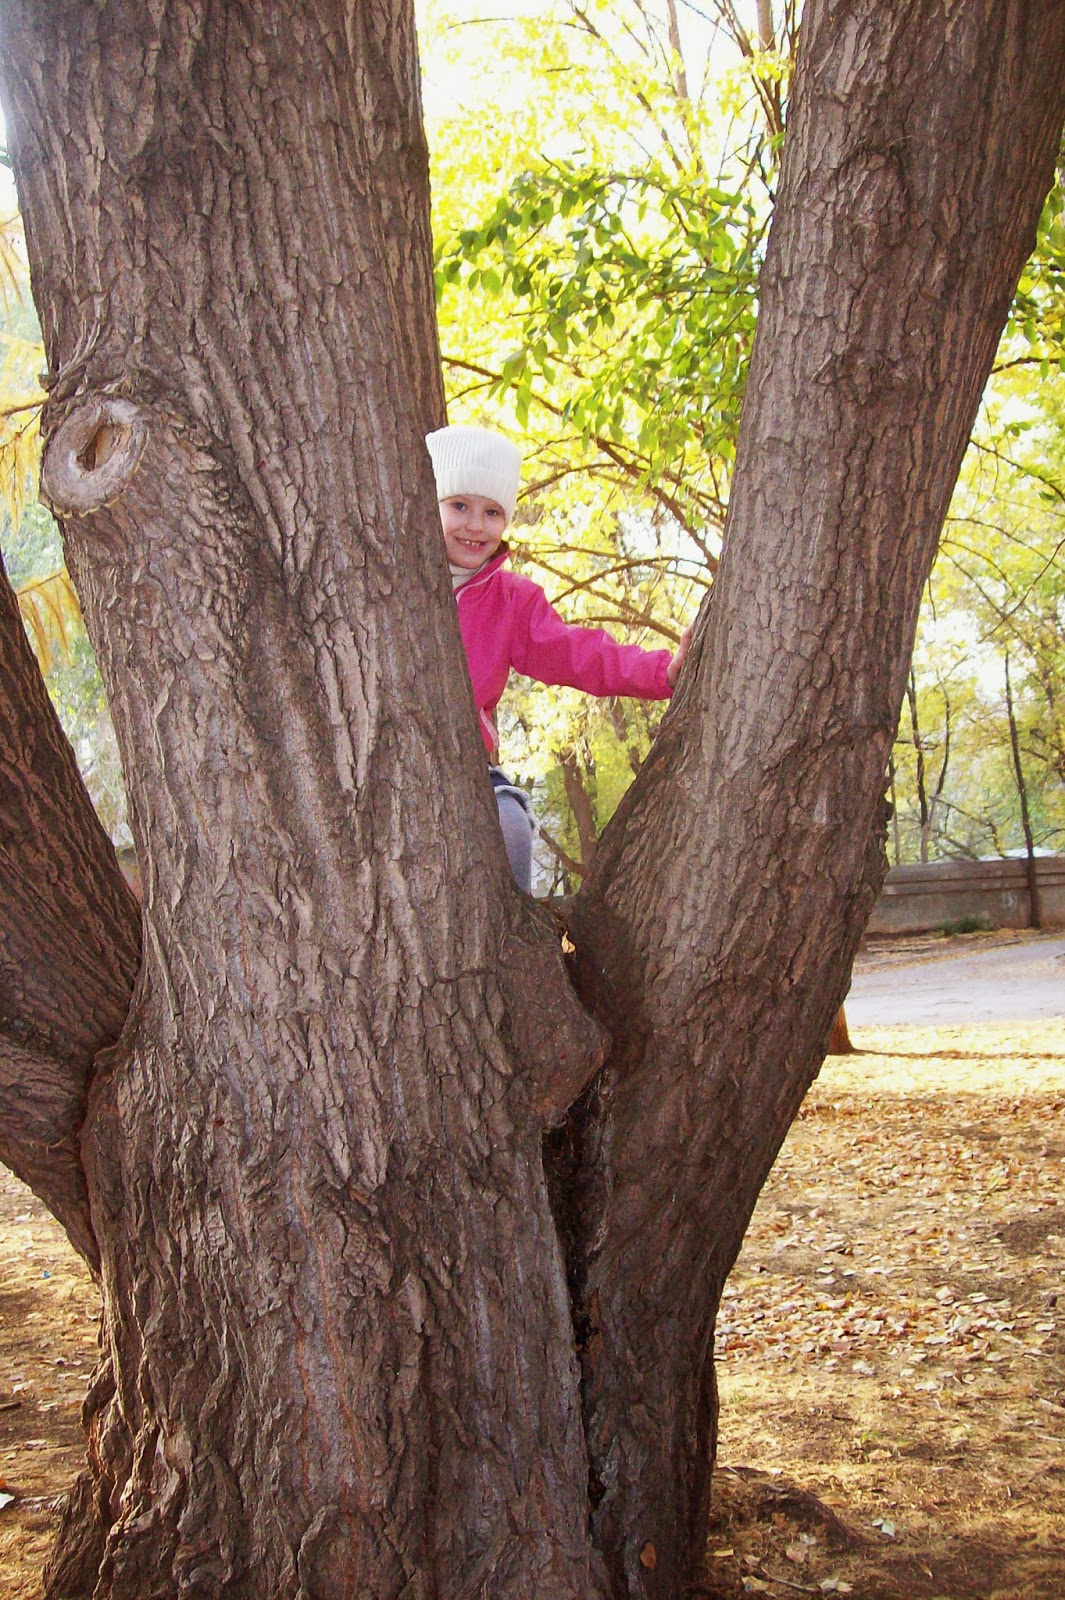 залезать на дерево - увлекательнейшее занятие!